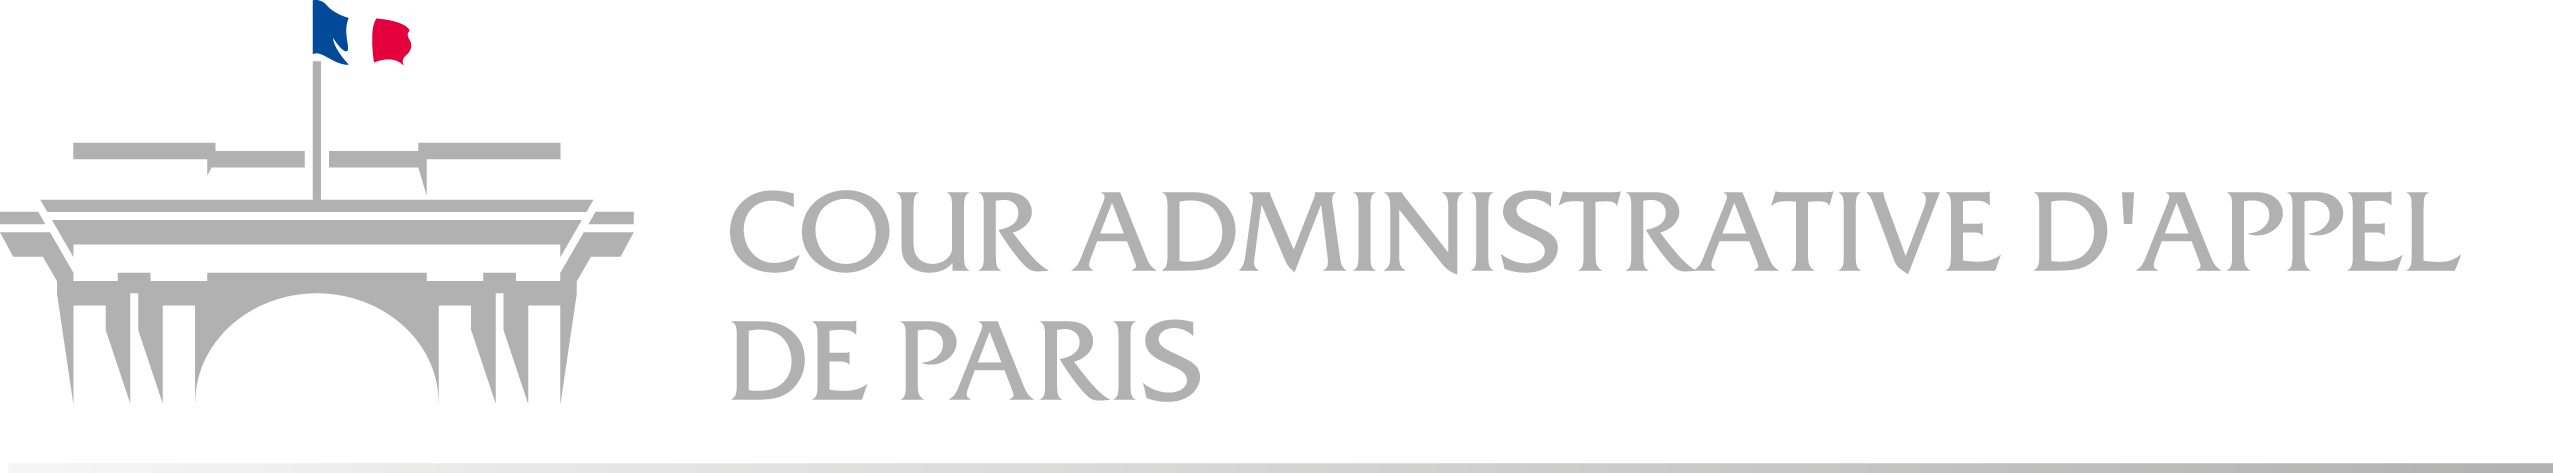 Logo Cour administrative d'appel de Paris